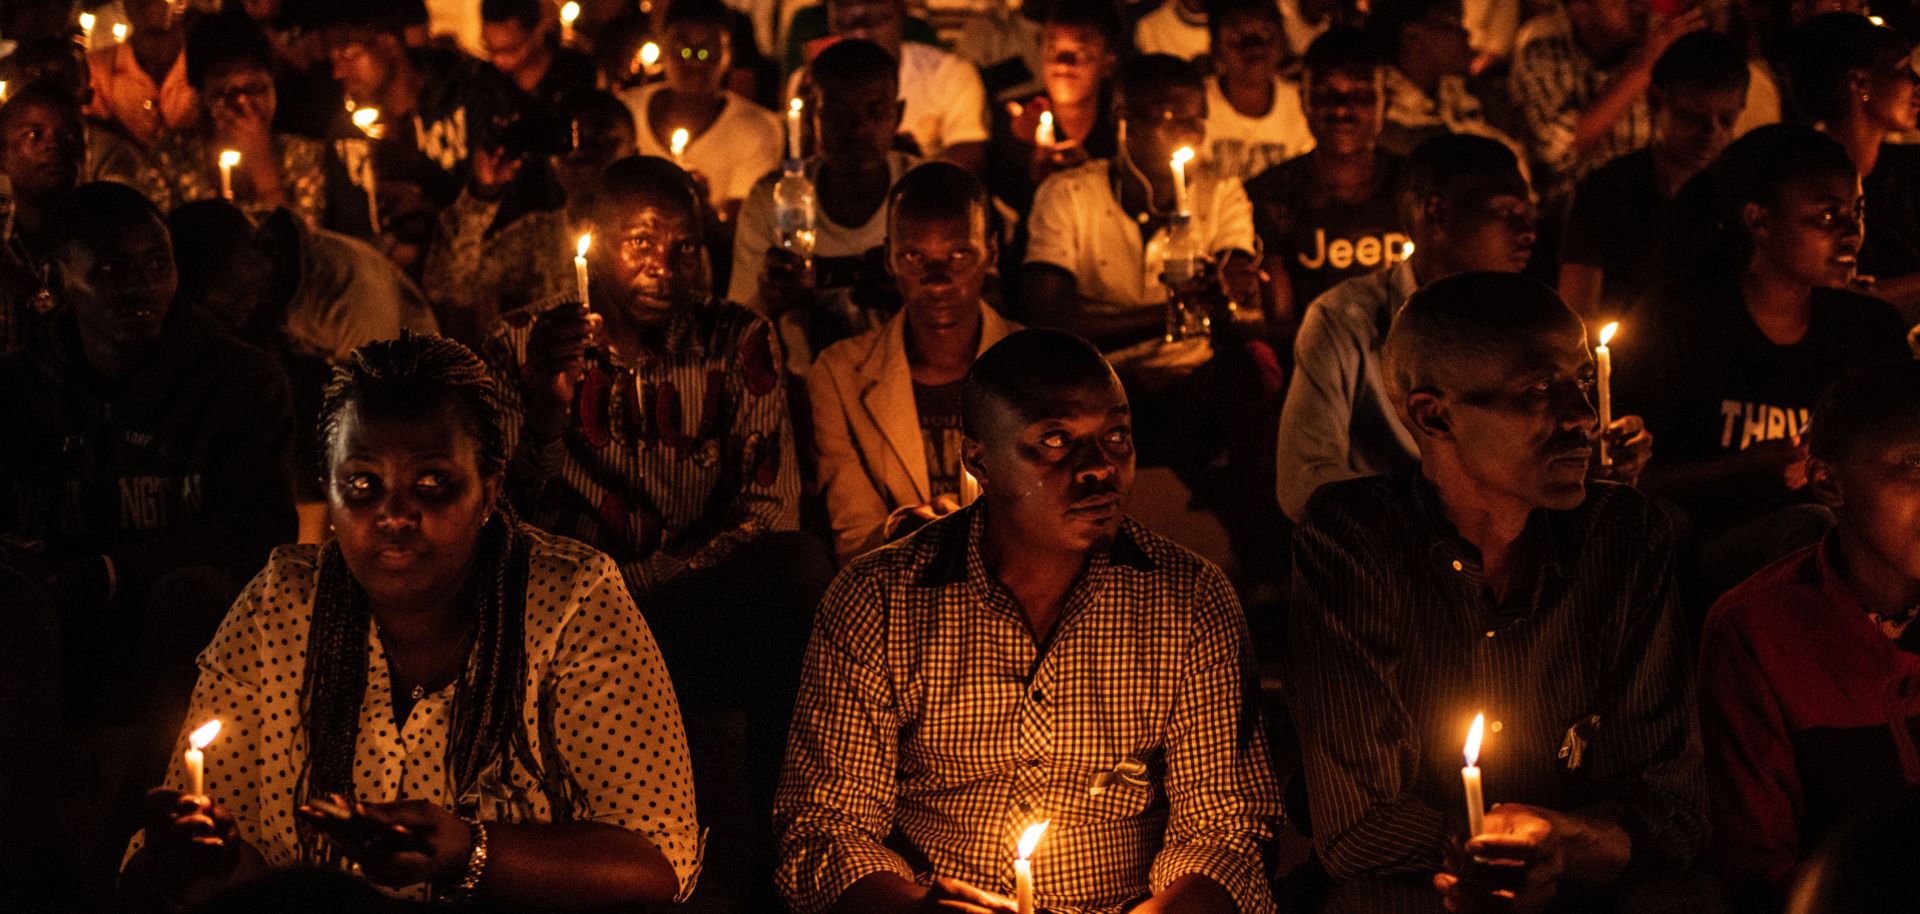 rwandan genocide hutus and tutsis